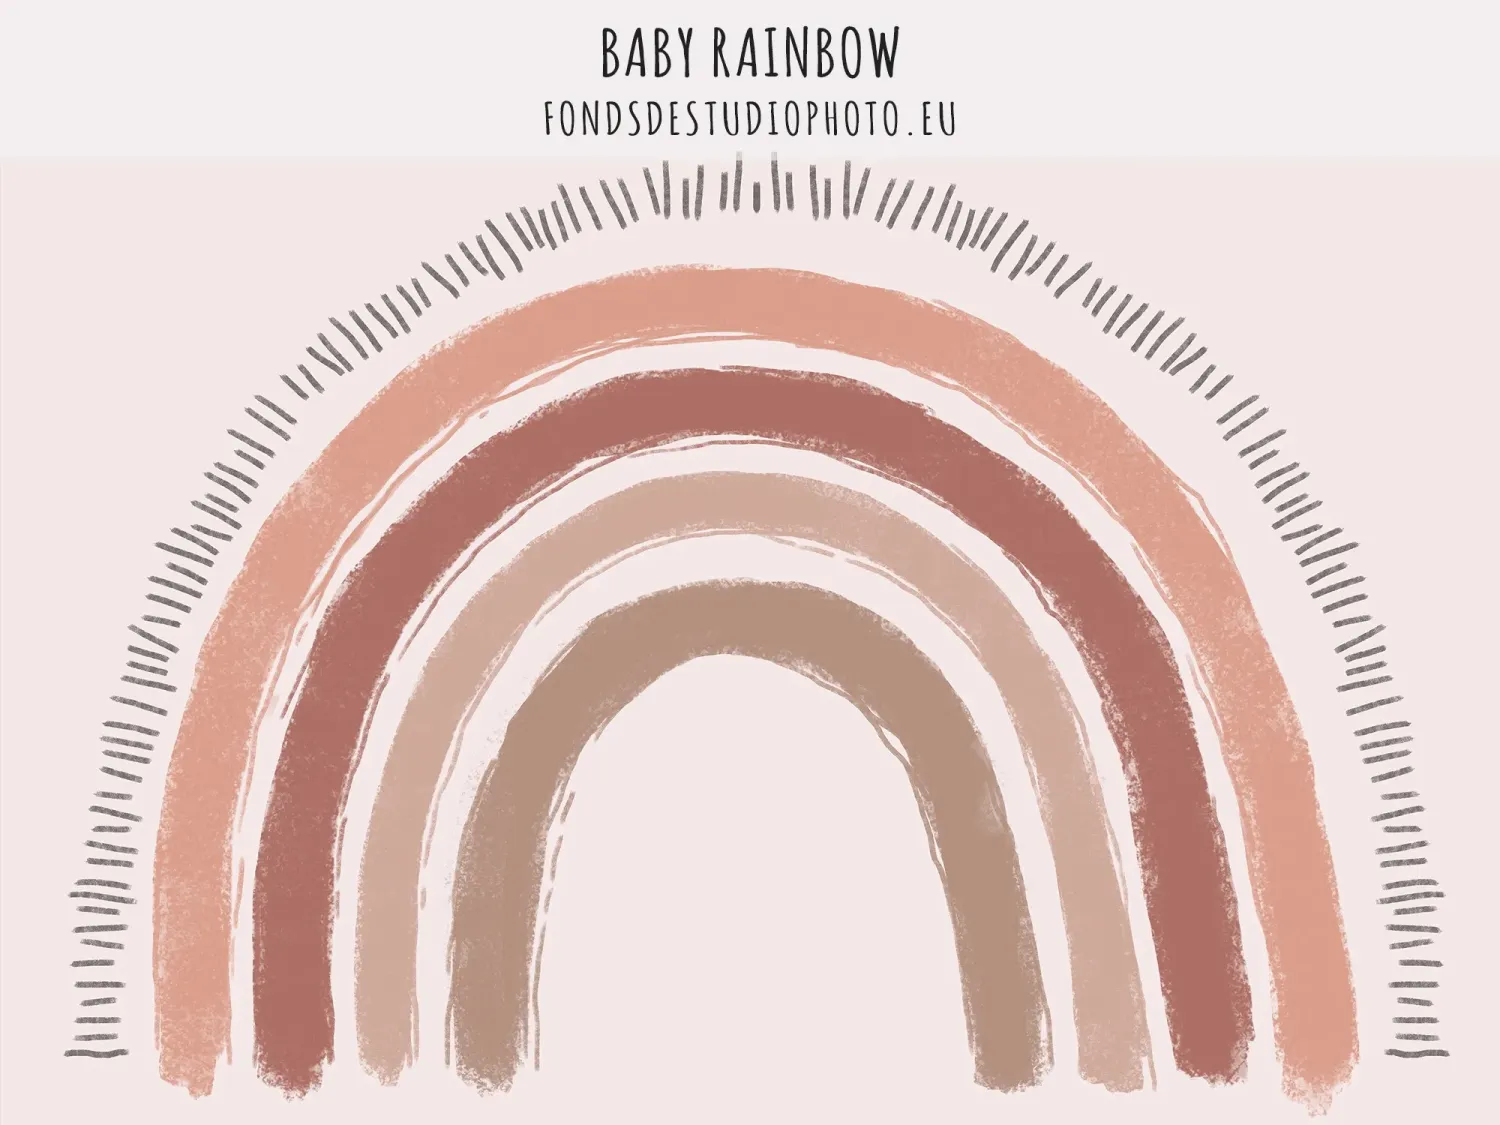 BABY RAINBOW